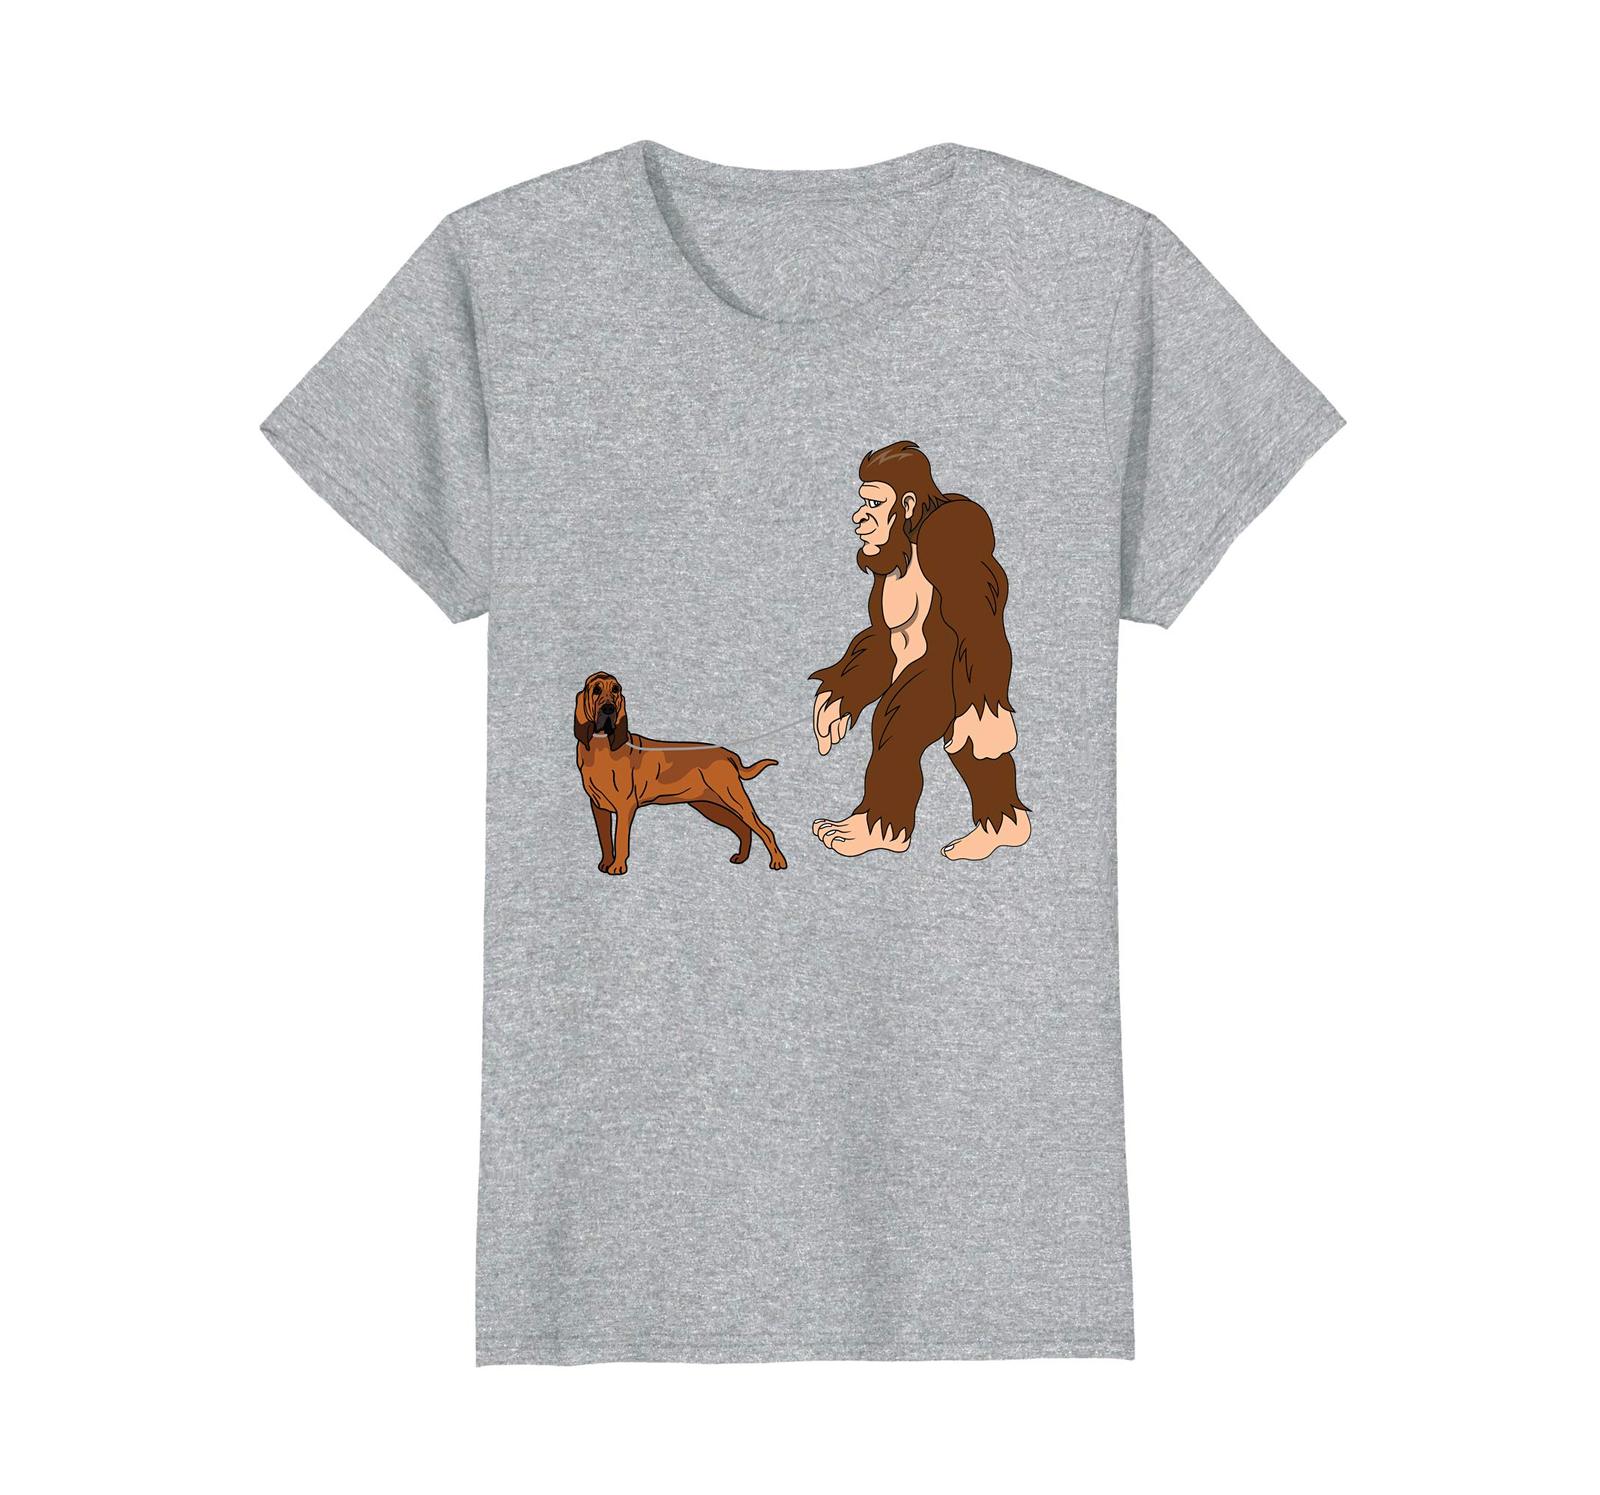 Dog Fashion - Bigfoot Walking Bloodhound Shirt UFO Believer Wowen